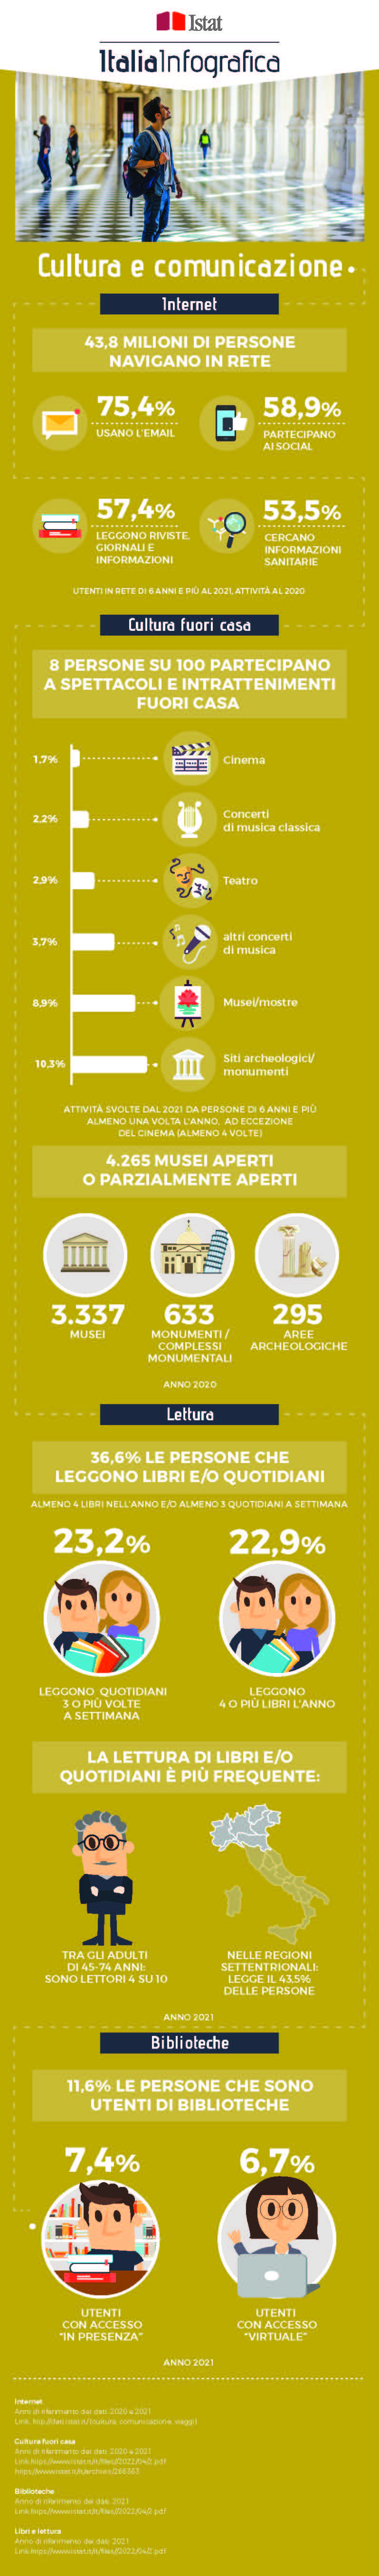 immagine di infografica con titolo ItaliaInfografica-cultura e comunicazione